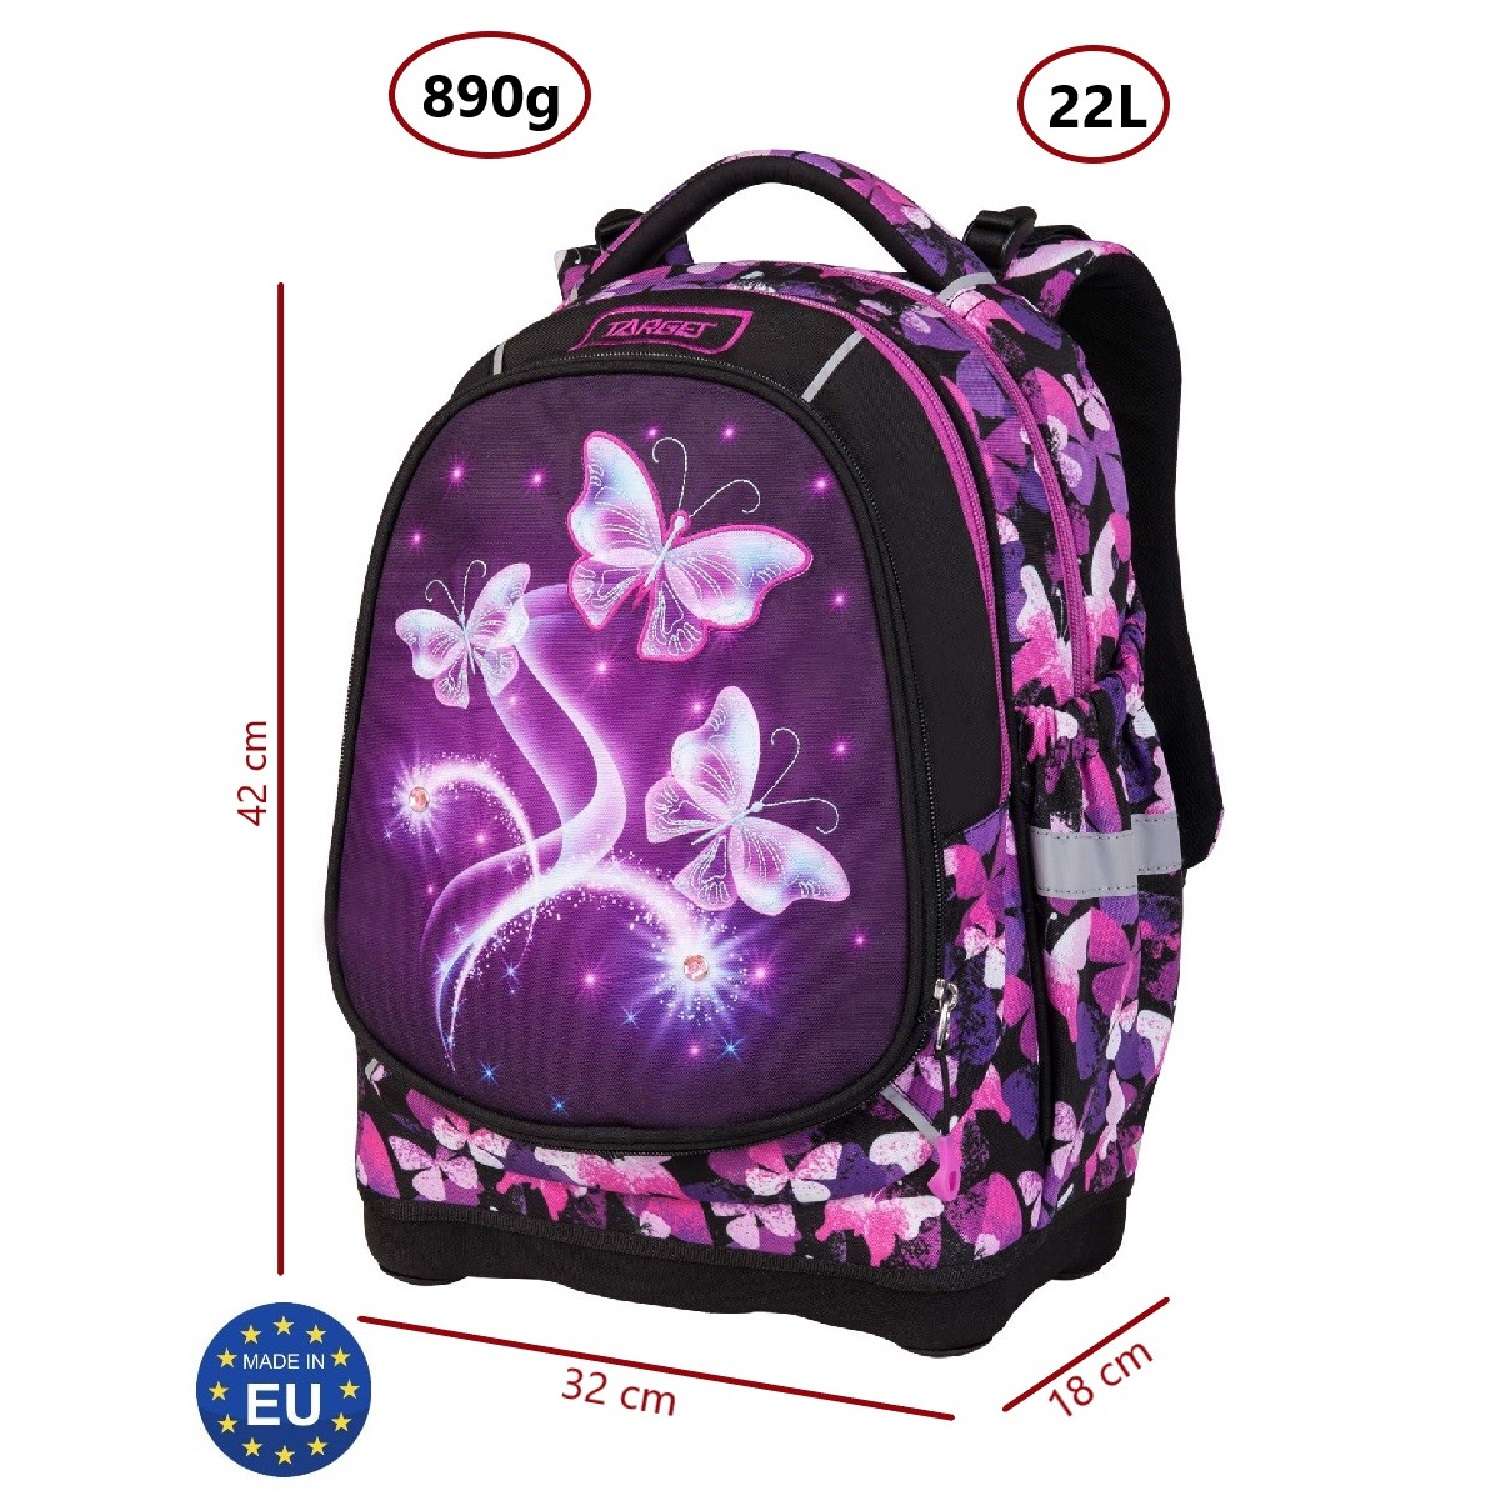 Рюкзак Target суперлегкий 3 в 1 Violet Butterfly 27002 - фото 2